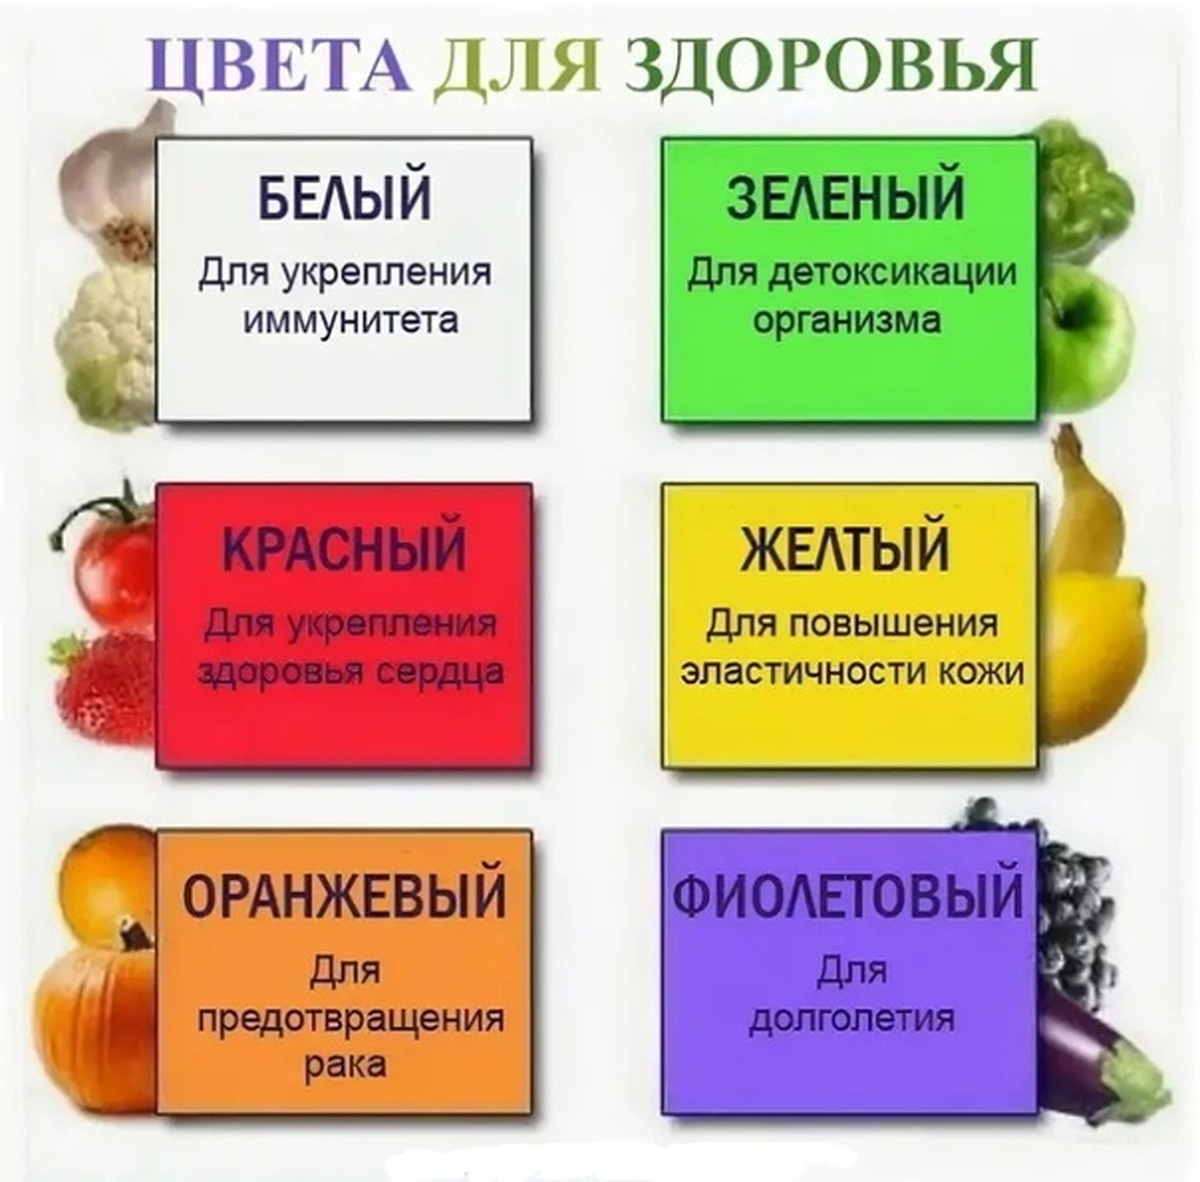 Зеленый цвет болезни. Цвет здоровья. Цветные продукты для здоровья. Влияние цвета на здоровье человека цветотерапия. Цвета продуктов для здоровья.